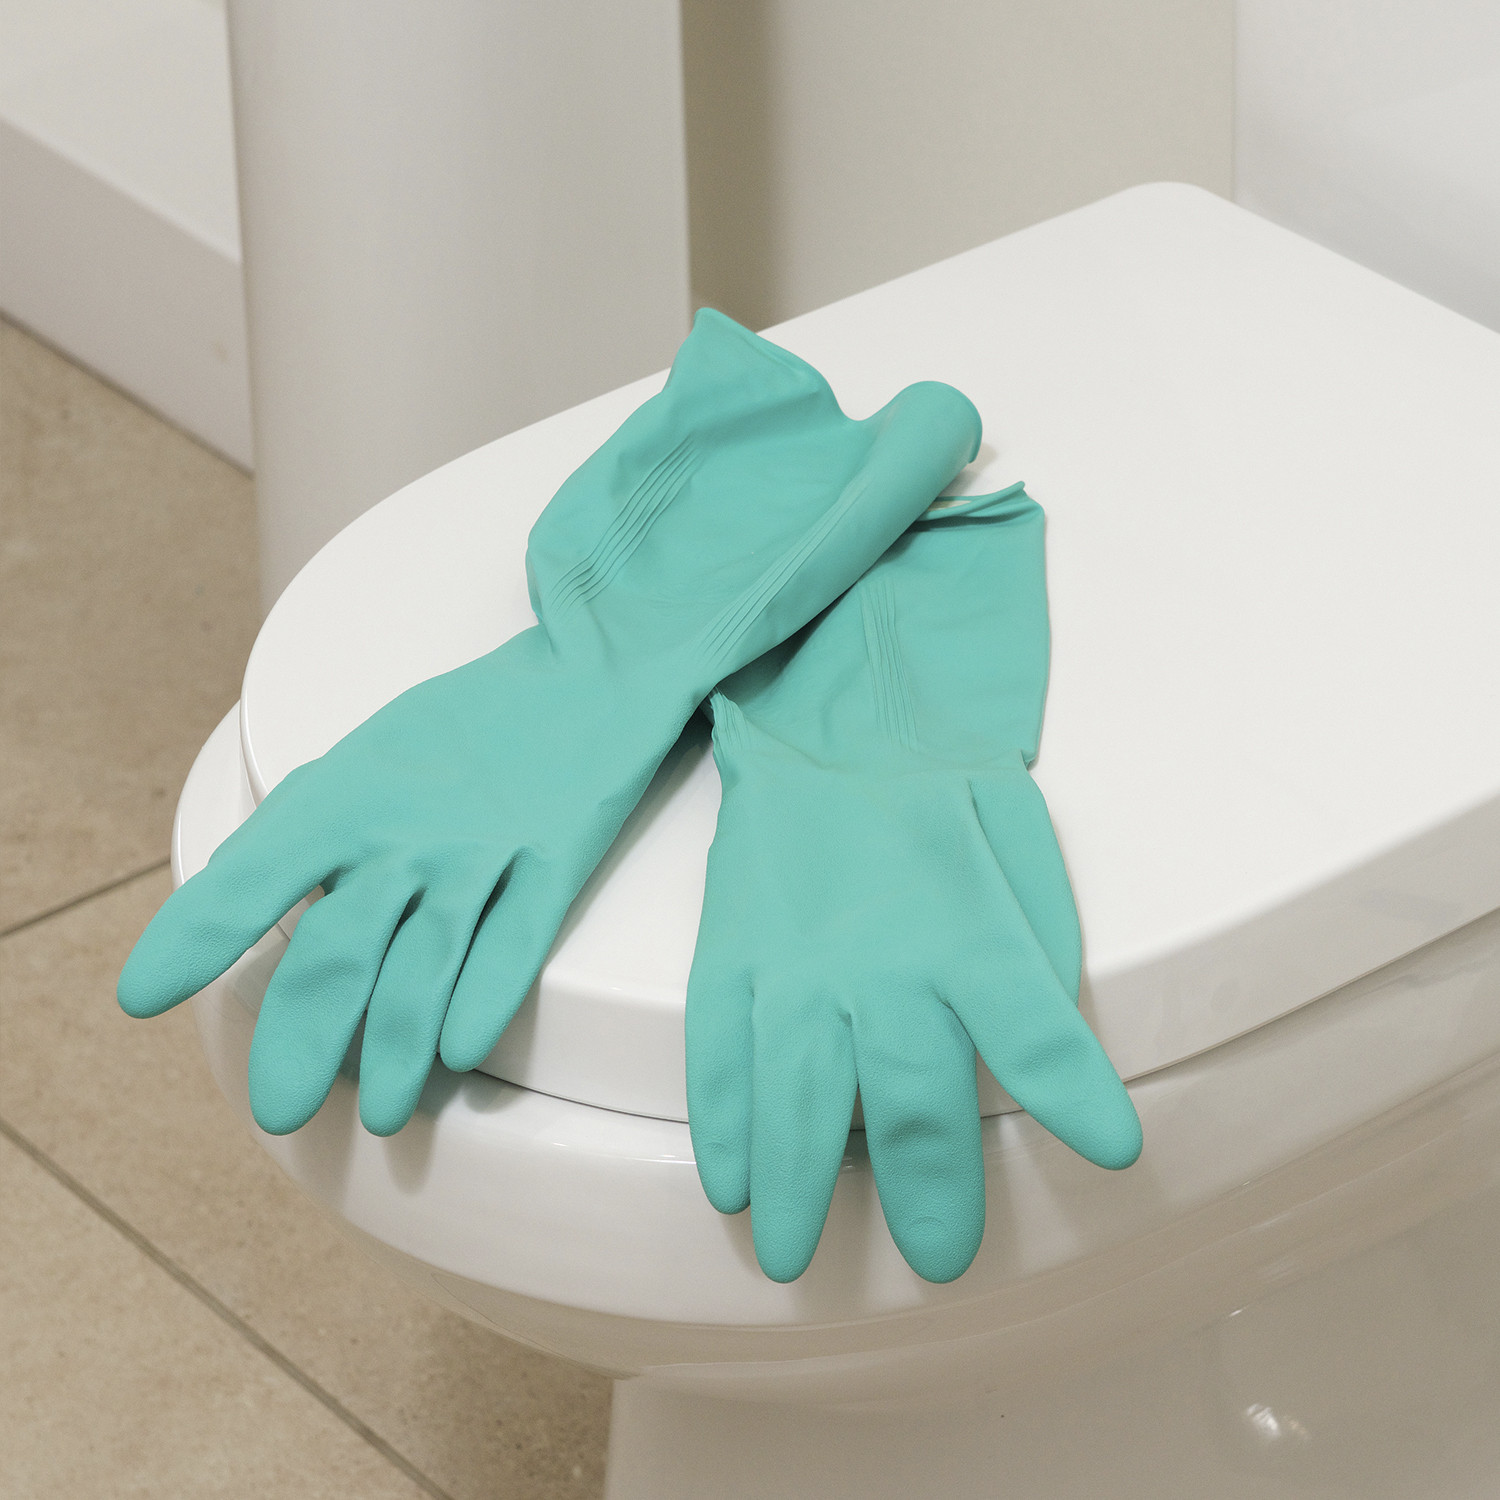 Marigold Longer Bathroom Gloves  - Blue / Large Image 3